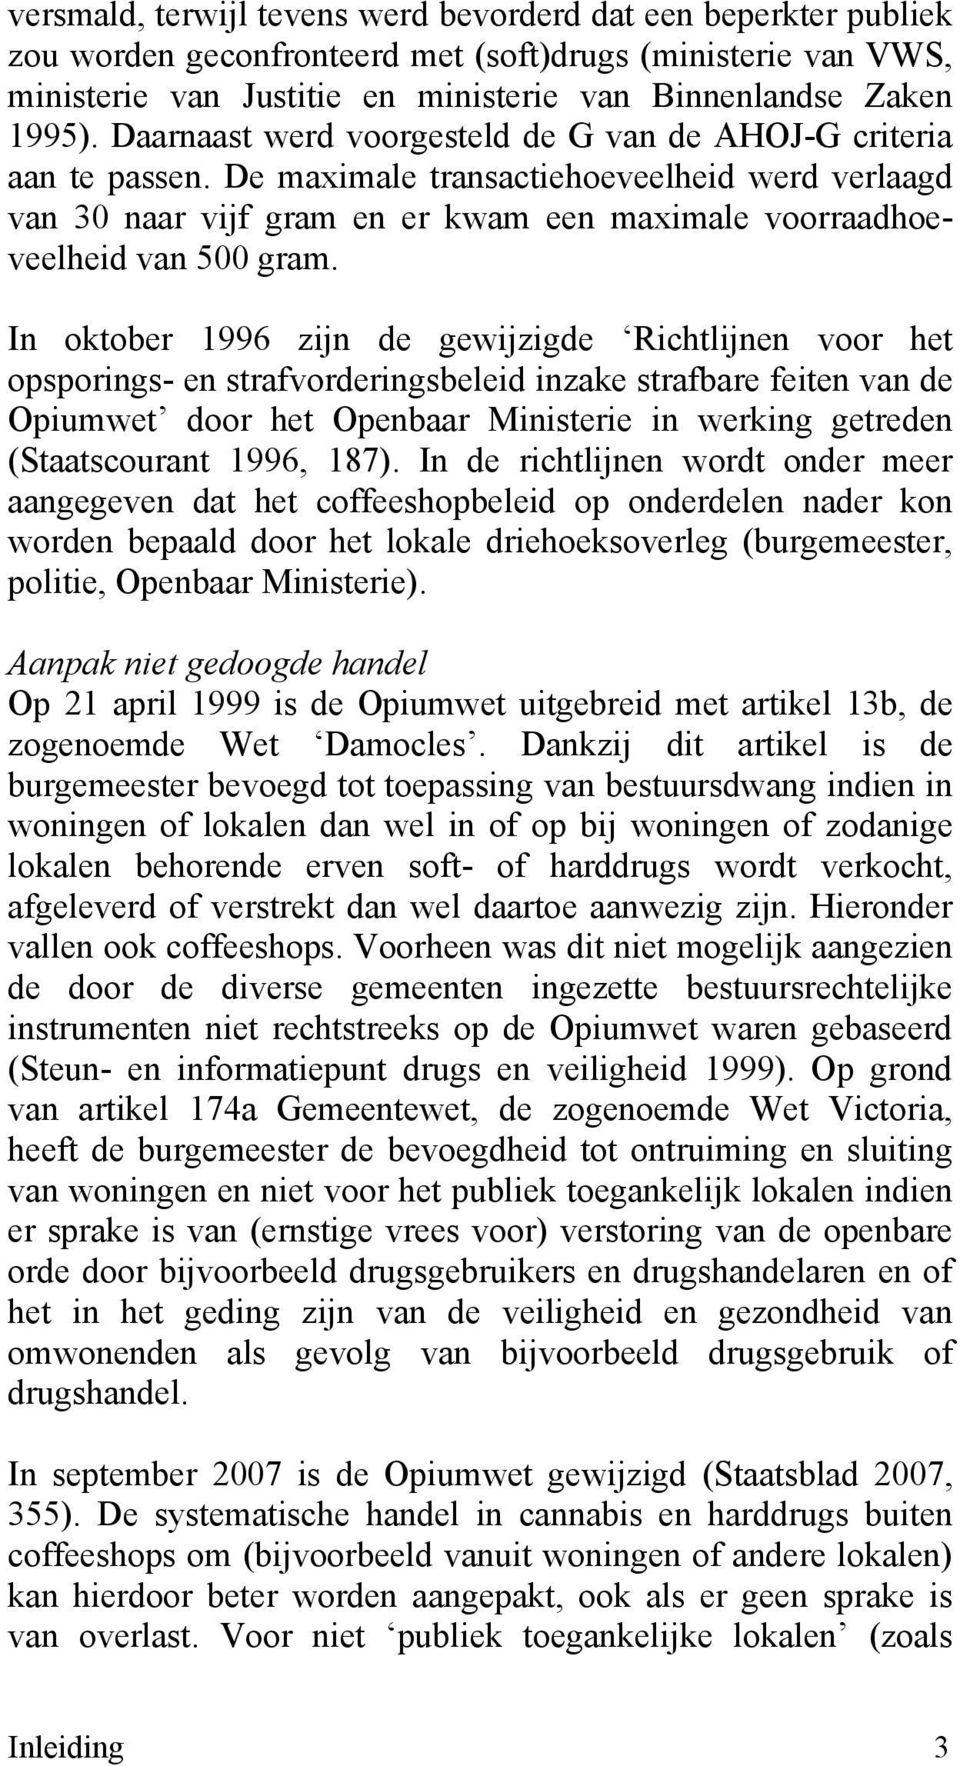 In oktober 1996 zijn de gewijzigde Richtlijnen voor het opsporings- en strafvorderingsbeleid inzake strafbare feiten van de Opiumwet door het Openbaar Ministerie in werking getreden (Staatscourant